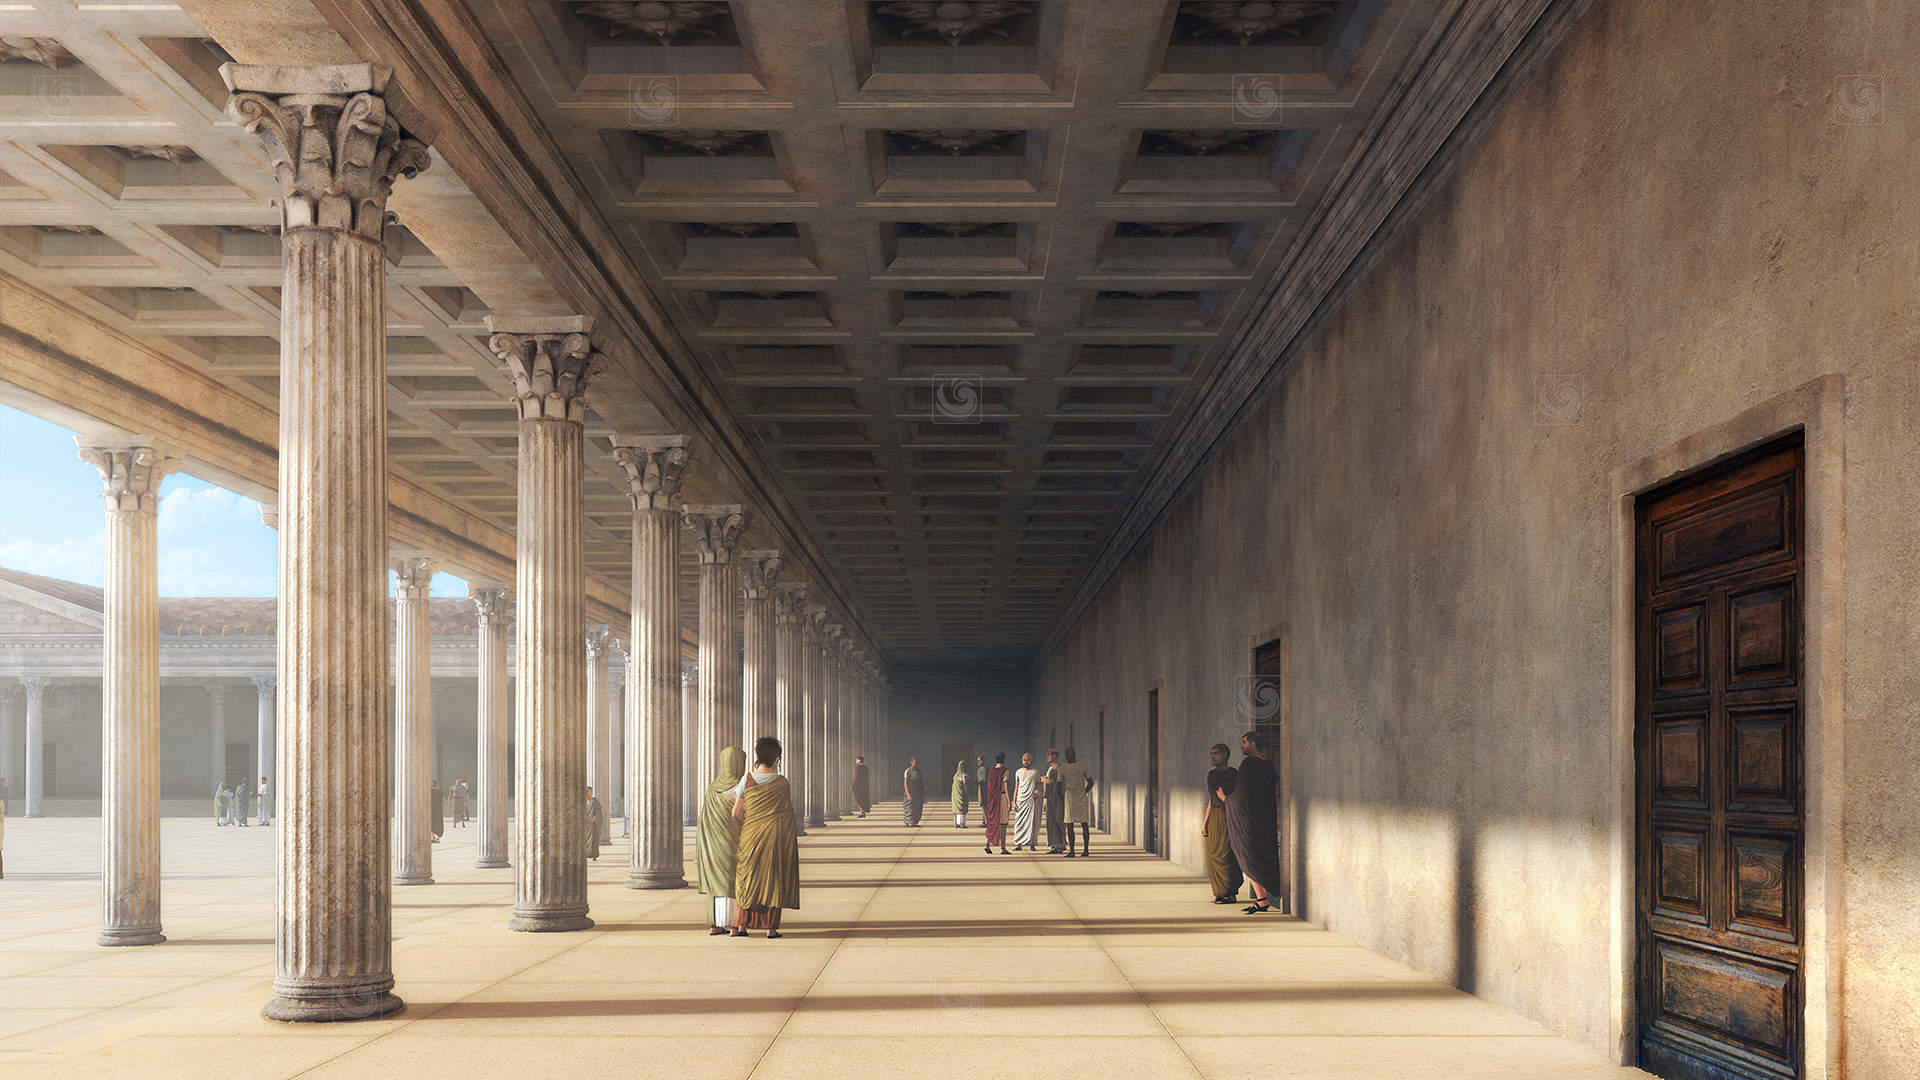 Fotograma de animación 3D mostrando los corredores porticados del antiguo Foro de Caesaraugusta